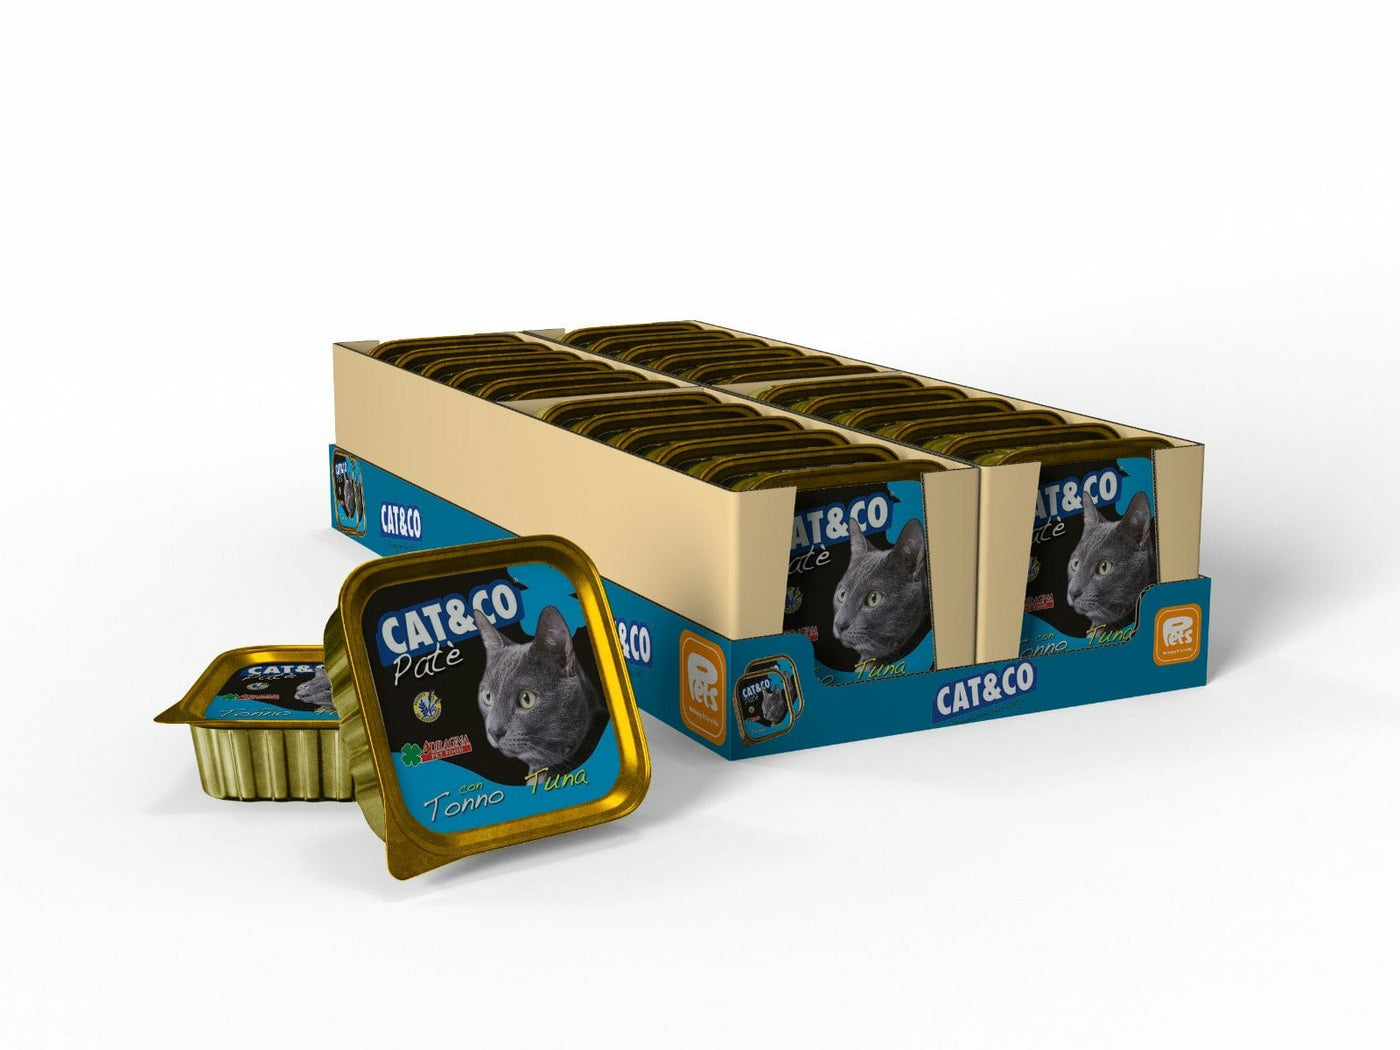 Cat&Co PATE` TUNA 24x100g Box